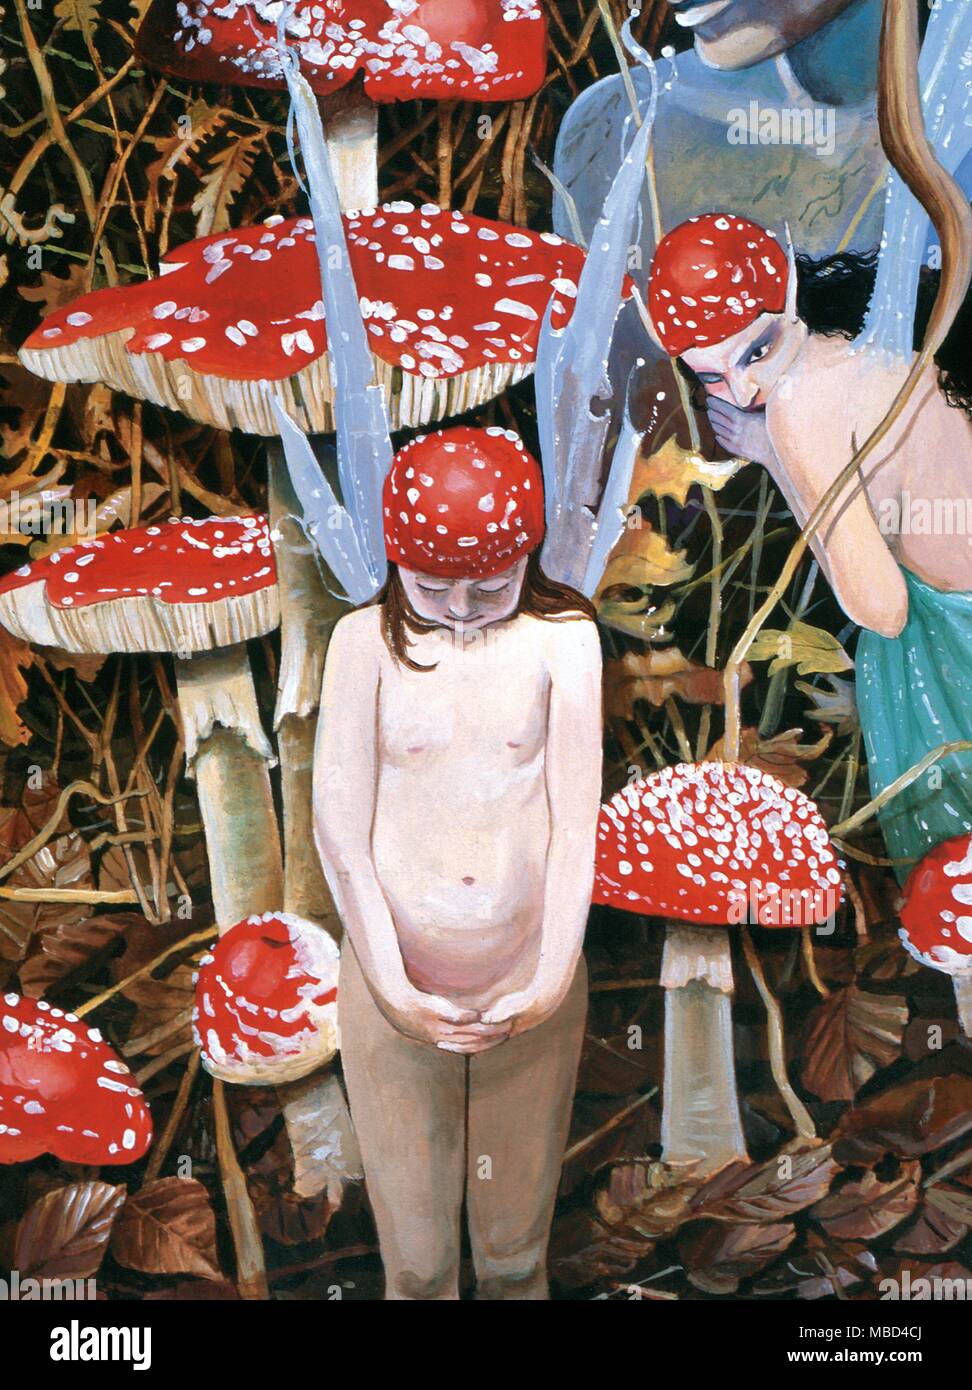 Aminita Muscaria". In einer Serie von Gemälden von Gordon Wain rund um das Thema 'Magic Mushrooms' und hallucigenics. *** Local Caption *** "Aminita Muscaria', von Gordon Wain Stockfoto